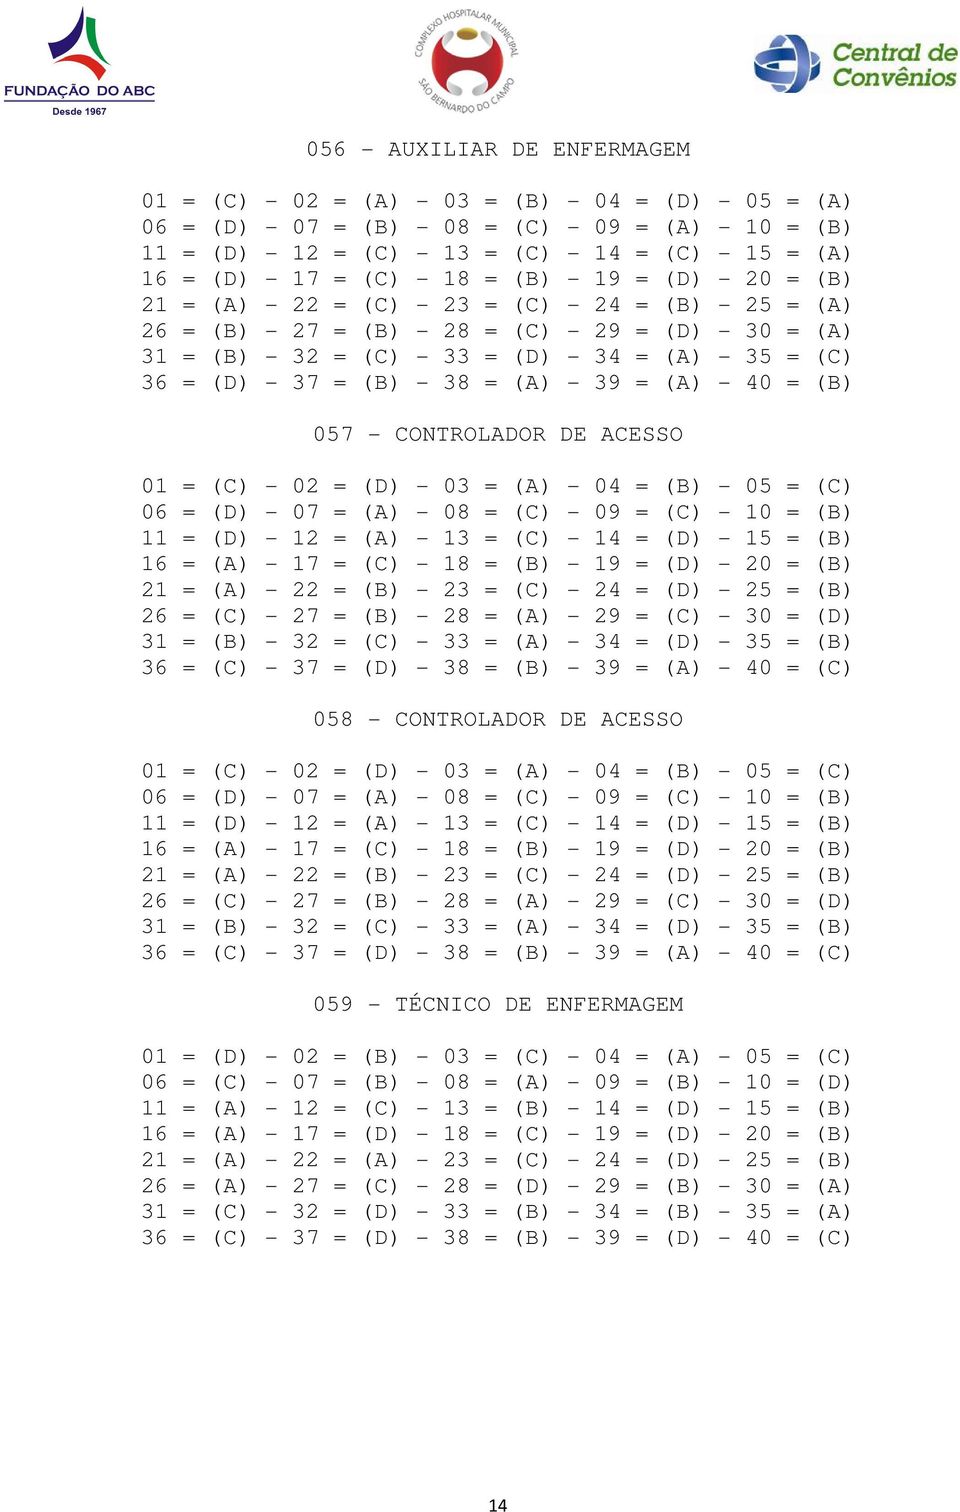 (C) 36 = (D) - 37 = (B) - 38 = (A) - 39 = (A) - 40 = (B) 057 - CONTROLADOR DE ACESSO 06 = (D) - 07 = (A) - 08 = (C) - 09 = (C) - 10 = (B) 11 = (D) - 12 = (A) - 13 = (C) - 14 = (D) - 15 = (B) 16 = (A)